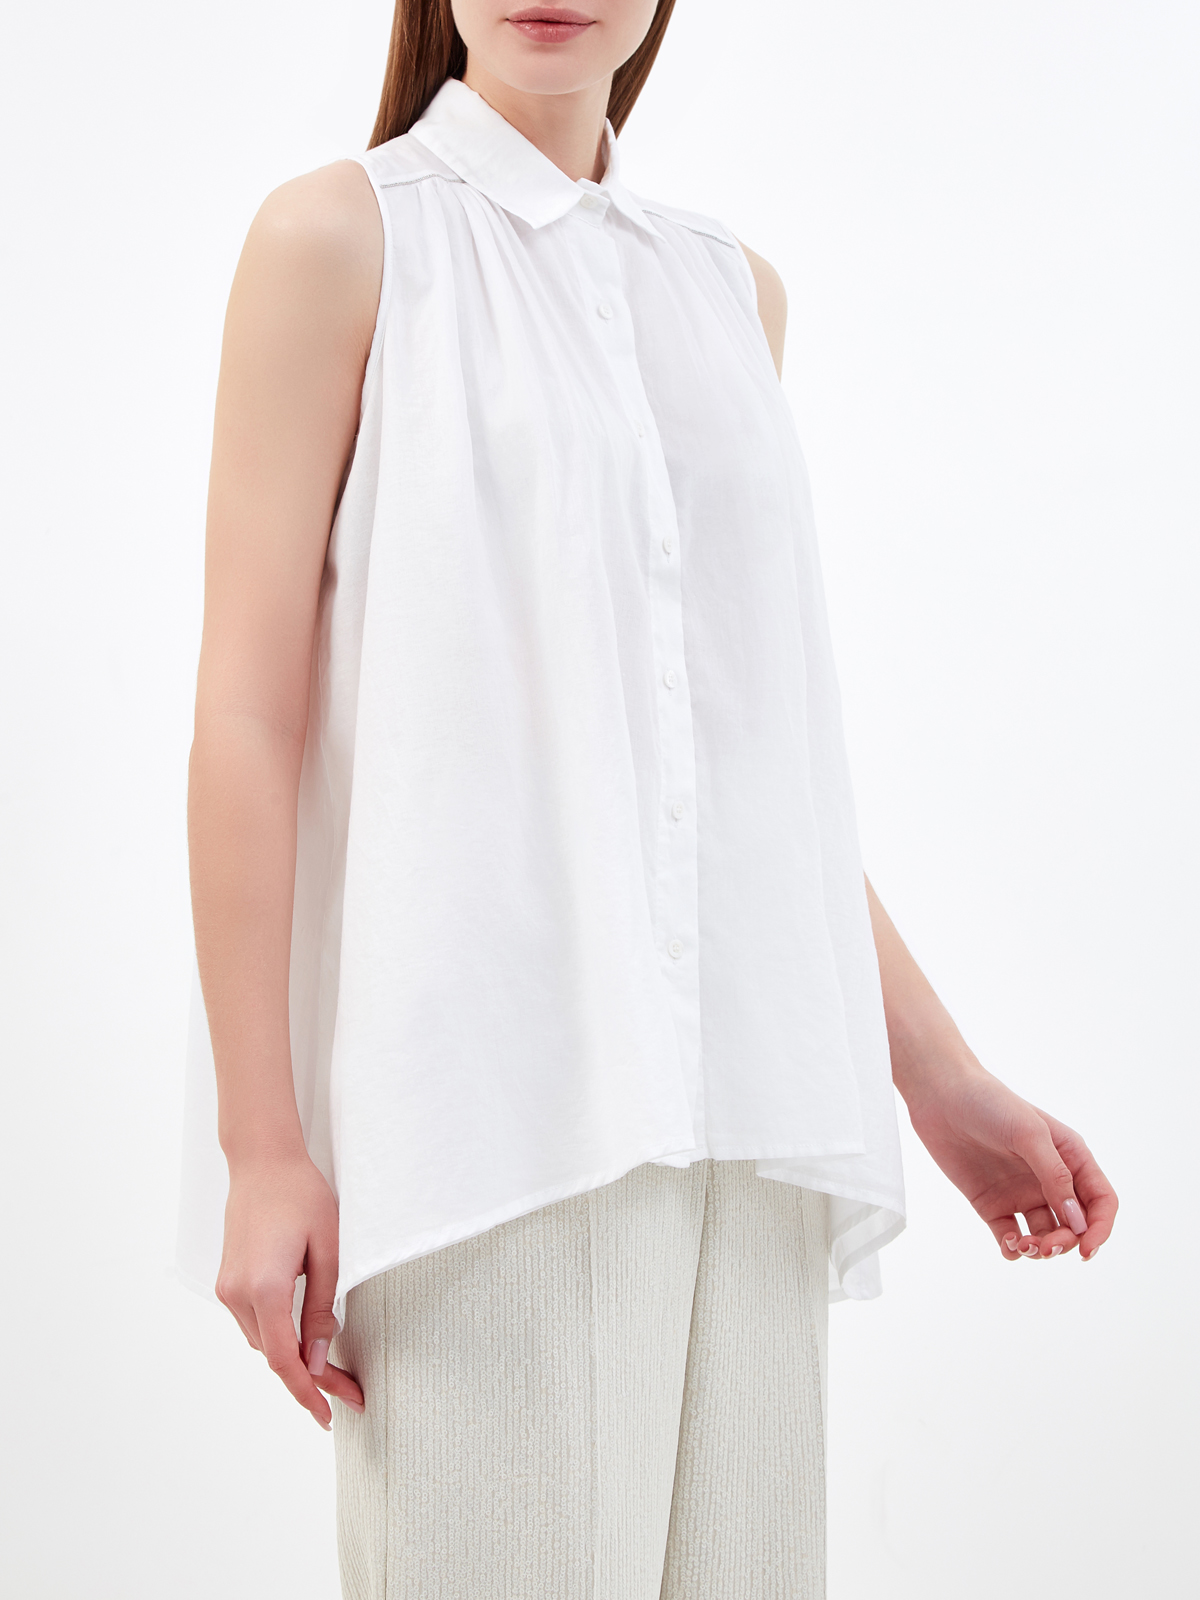 Удлиненная блуза асимметричного кроя из хлопка PESERICO, цвет белый, размер 40;42;44;46;38 - фото 3